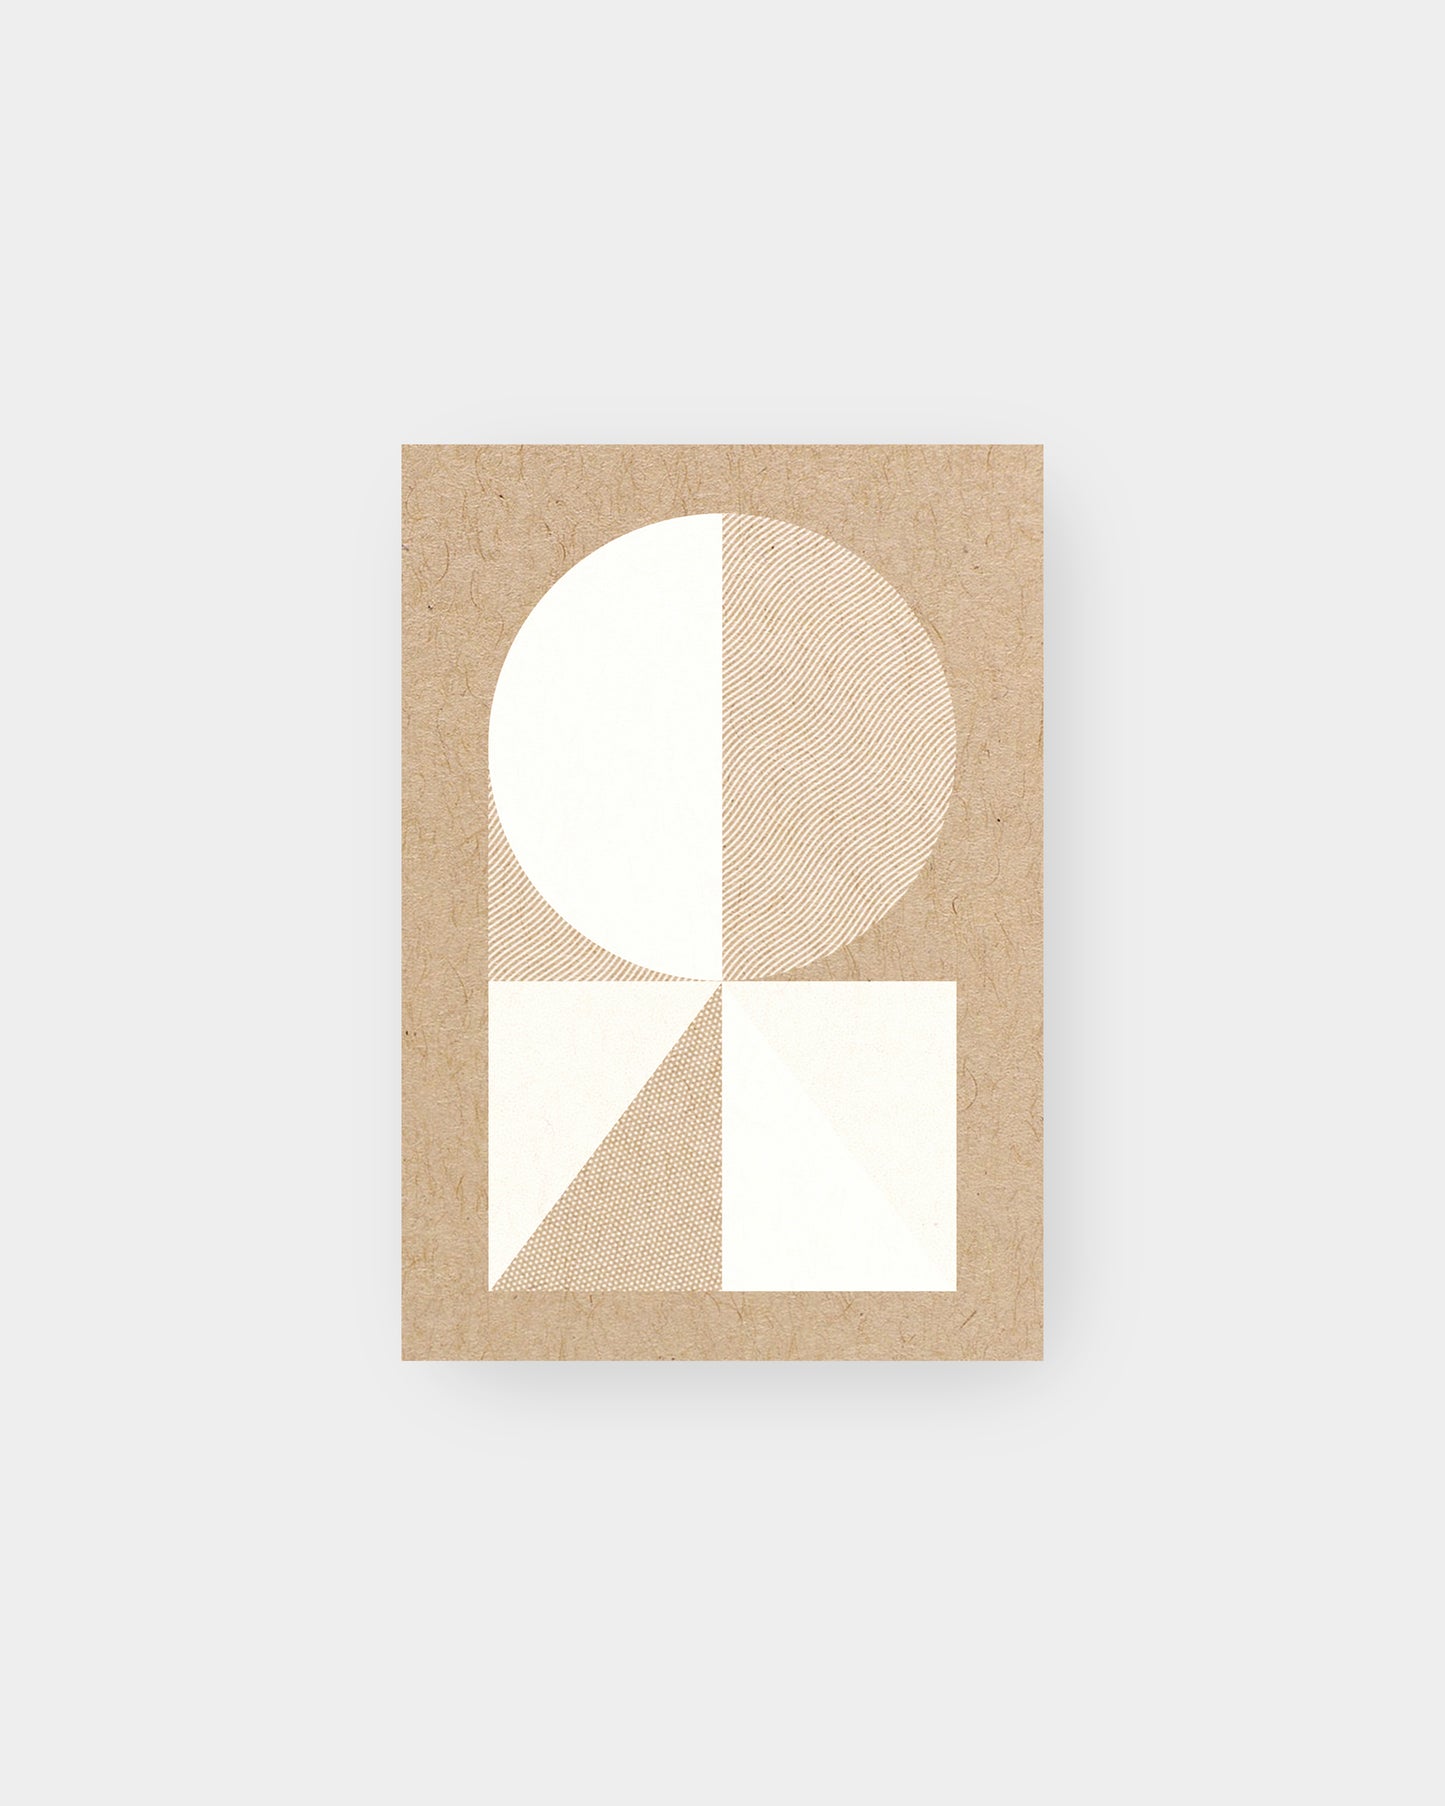 Bauhaus inspired geometric motif on greeting card. 3.5 x 5", kraft colorway.